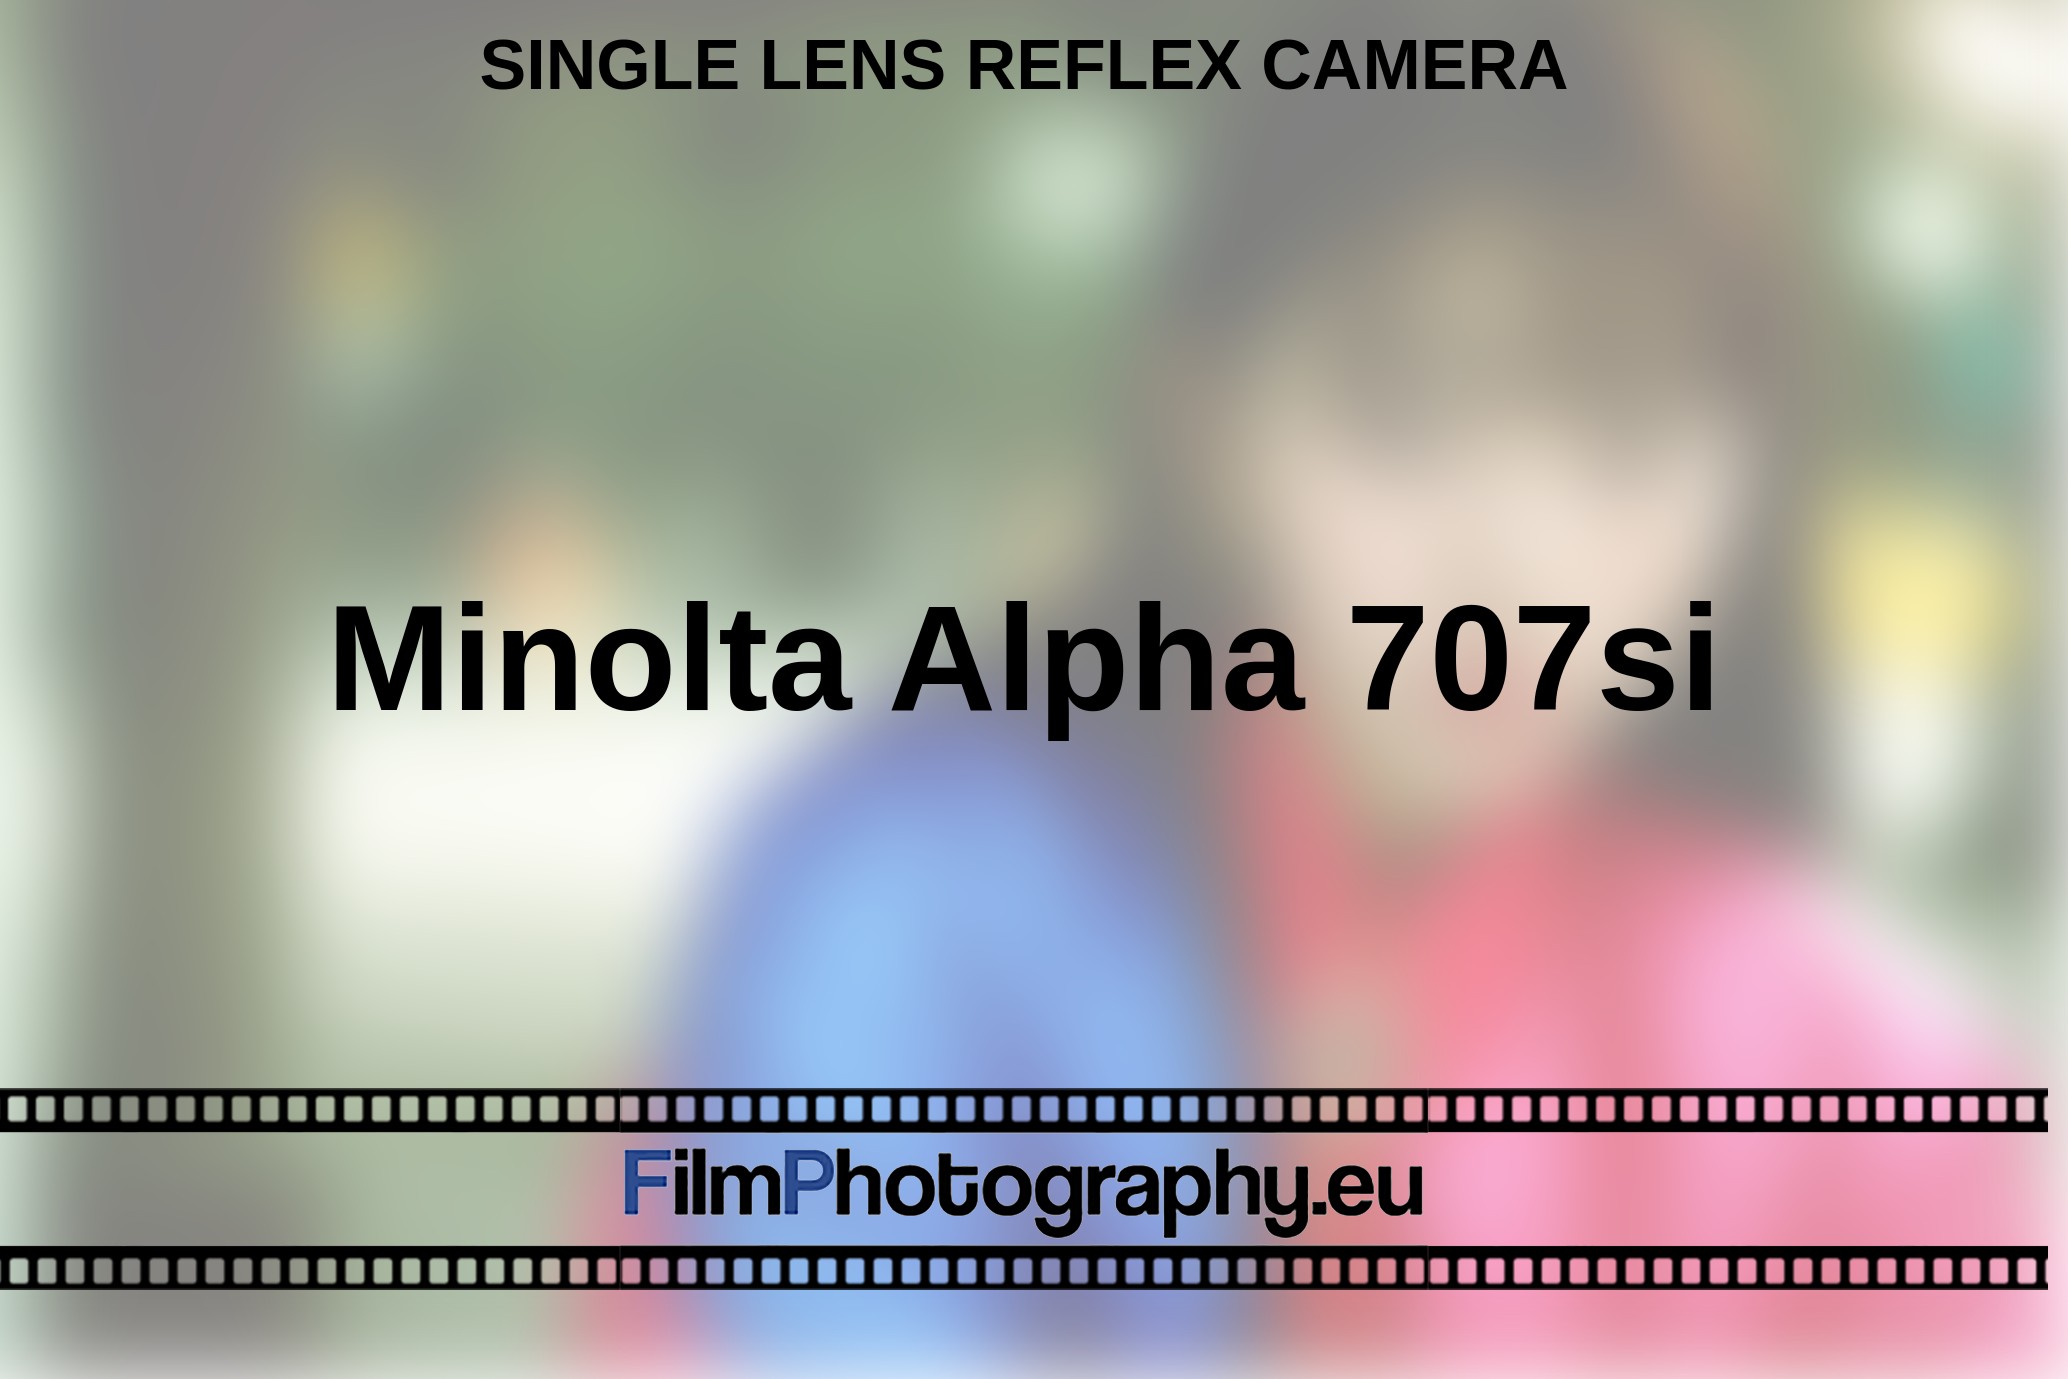 Minolta-Alpha-707si-single-lens-reflex-camera-bnv.jpg